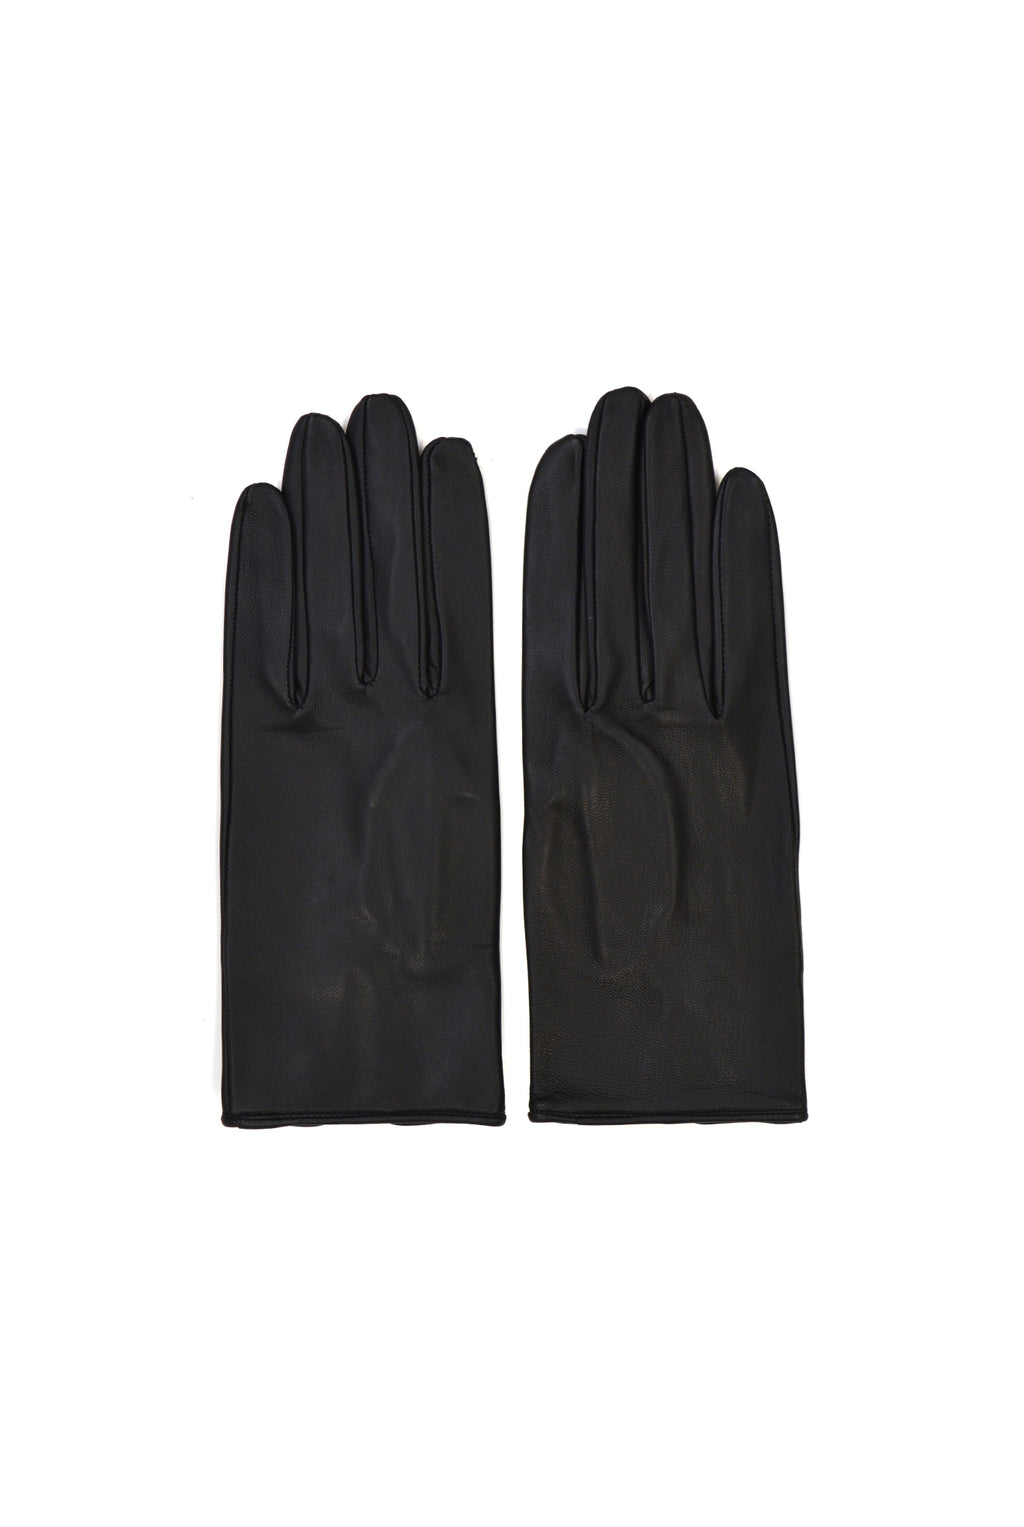 Ernest W. Baker Leather Gloves, Black